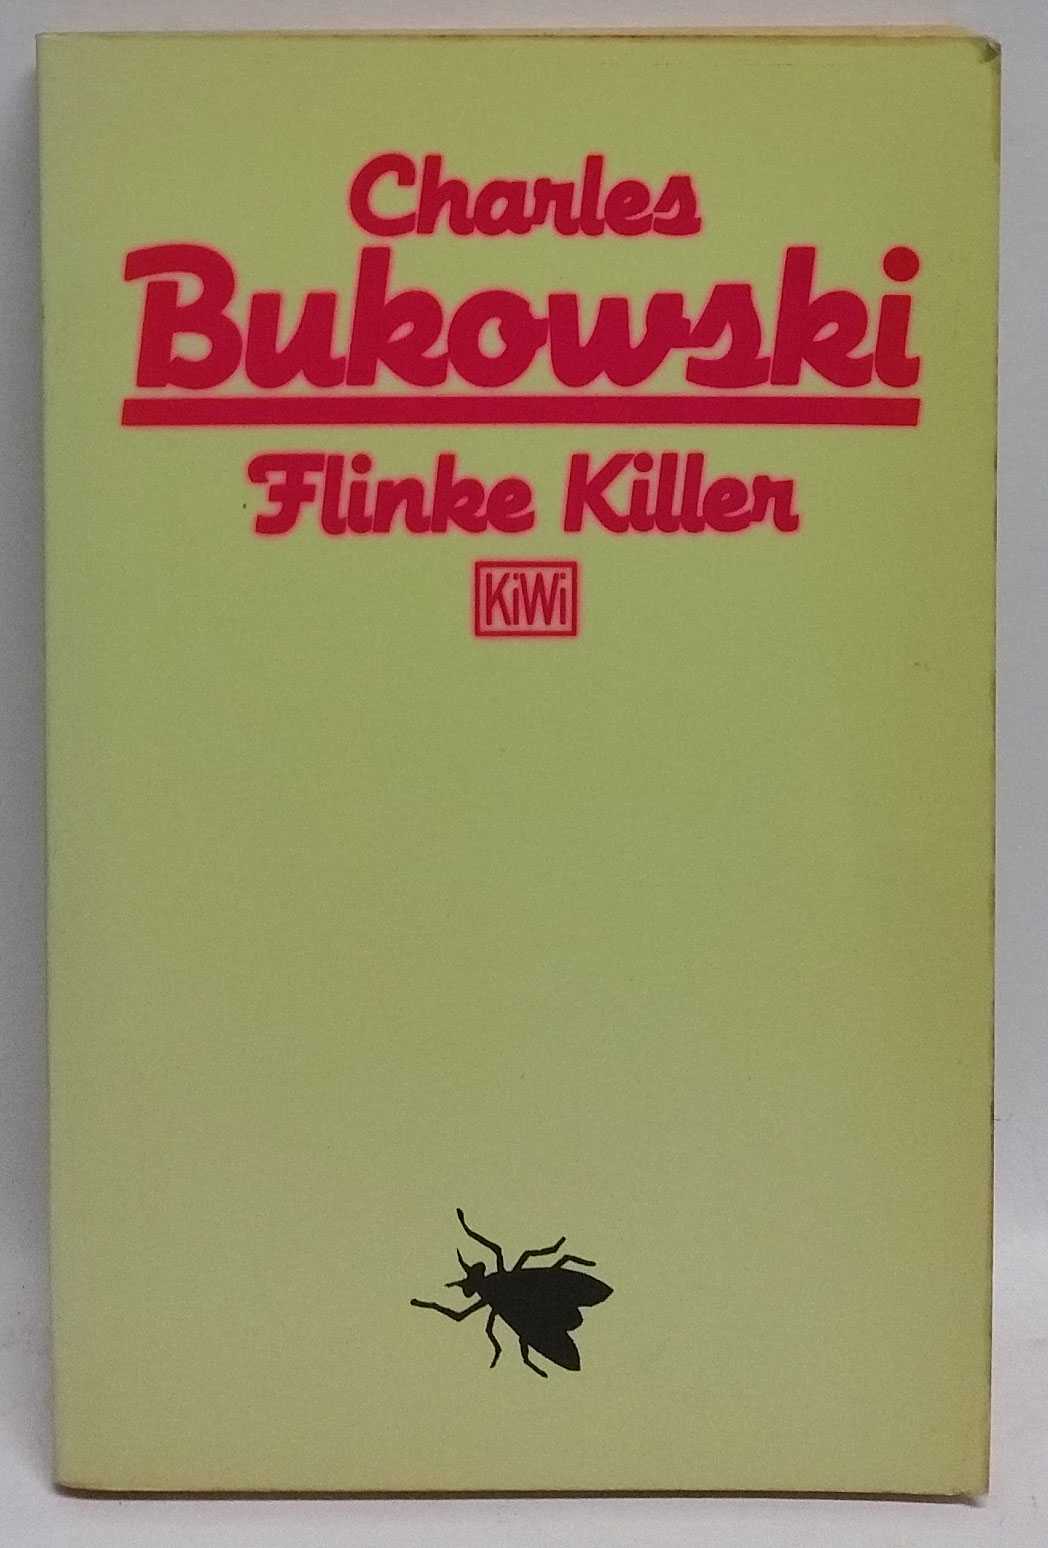 Charles Bukowksi - Flinke Killer